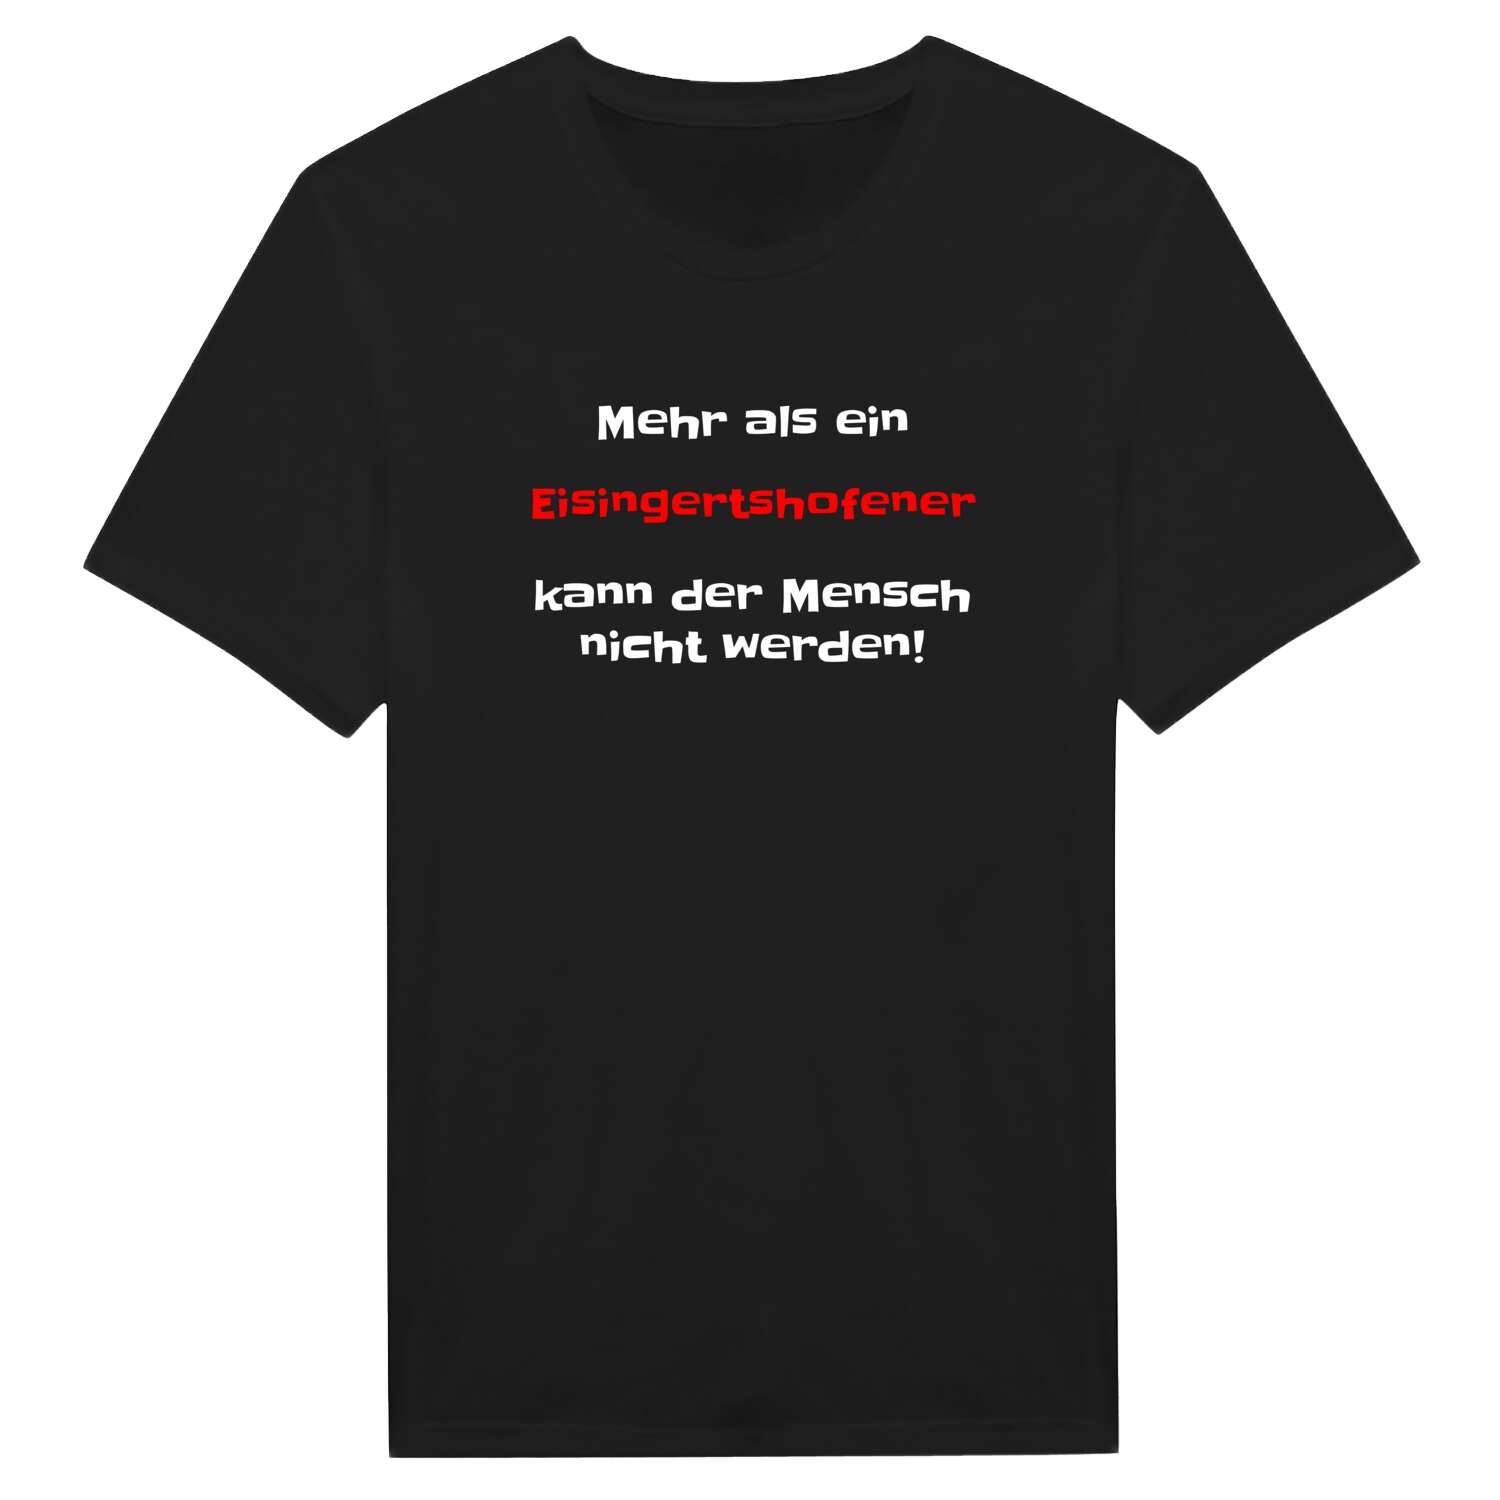 Eisingertshofen T-Shirt »Mehr als ein«